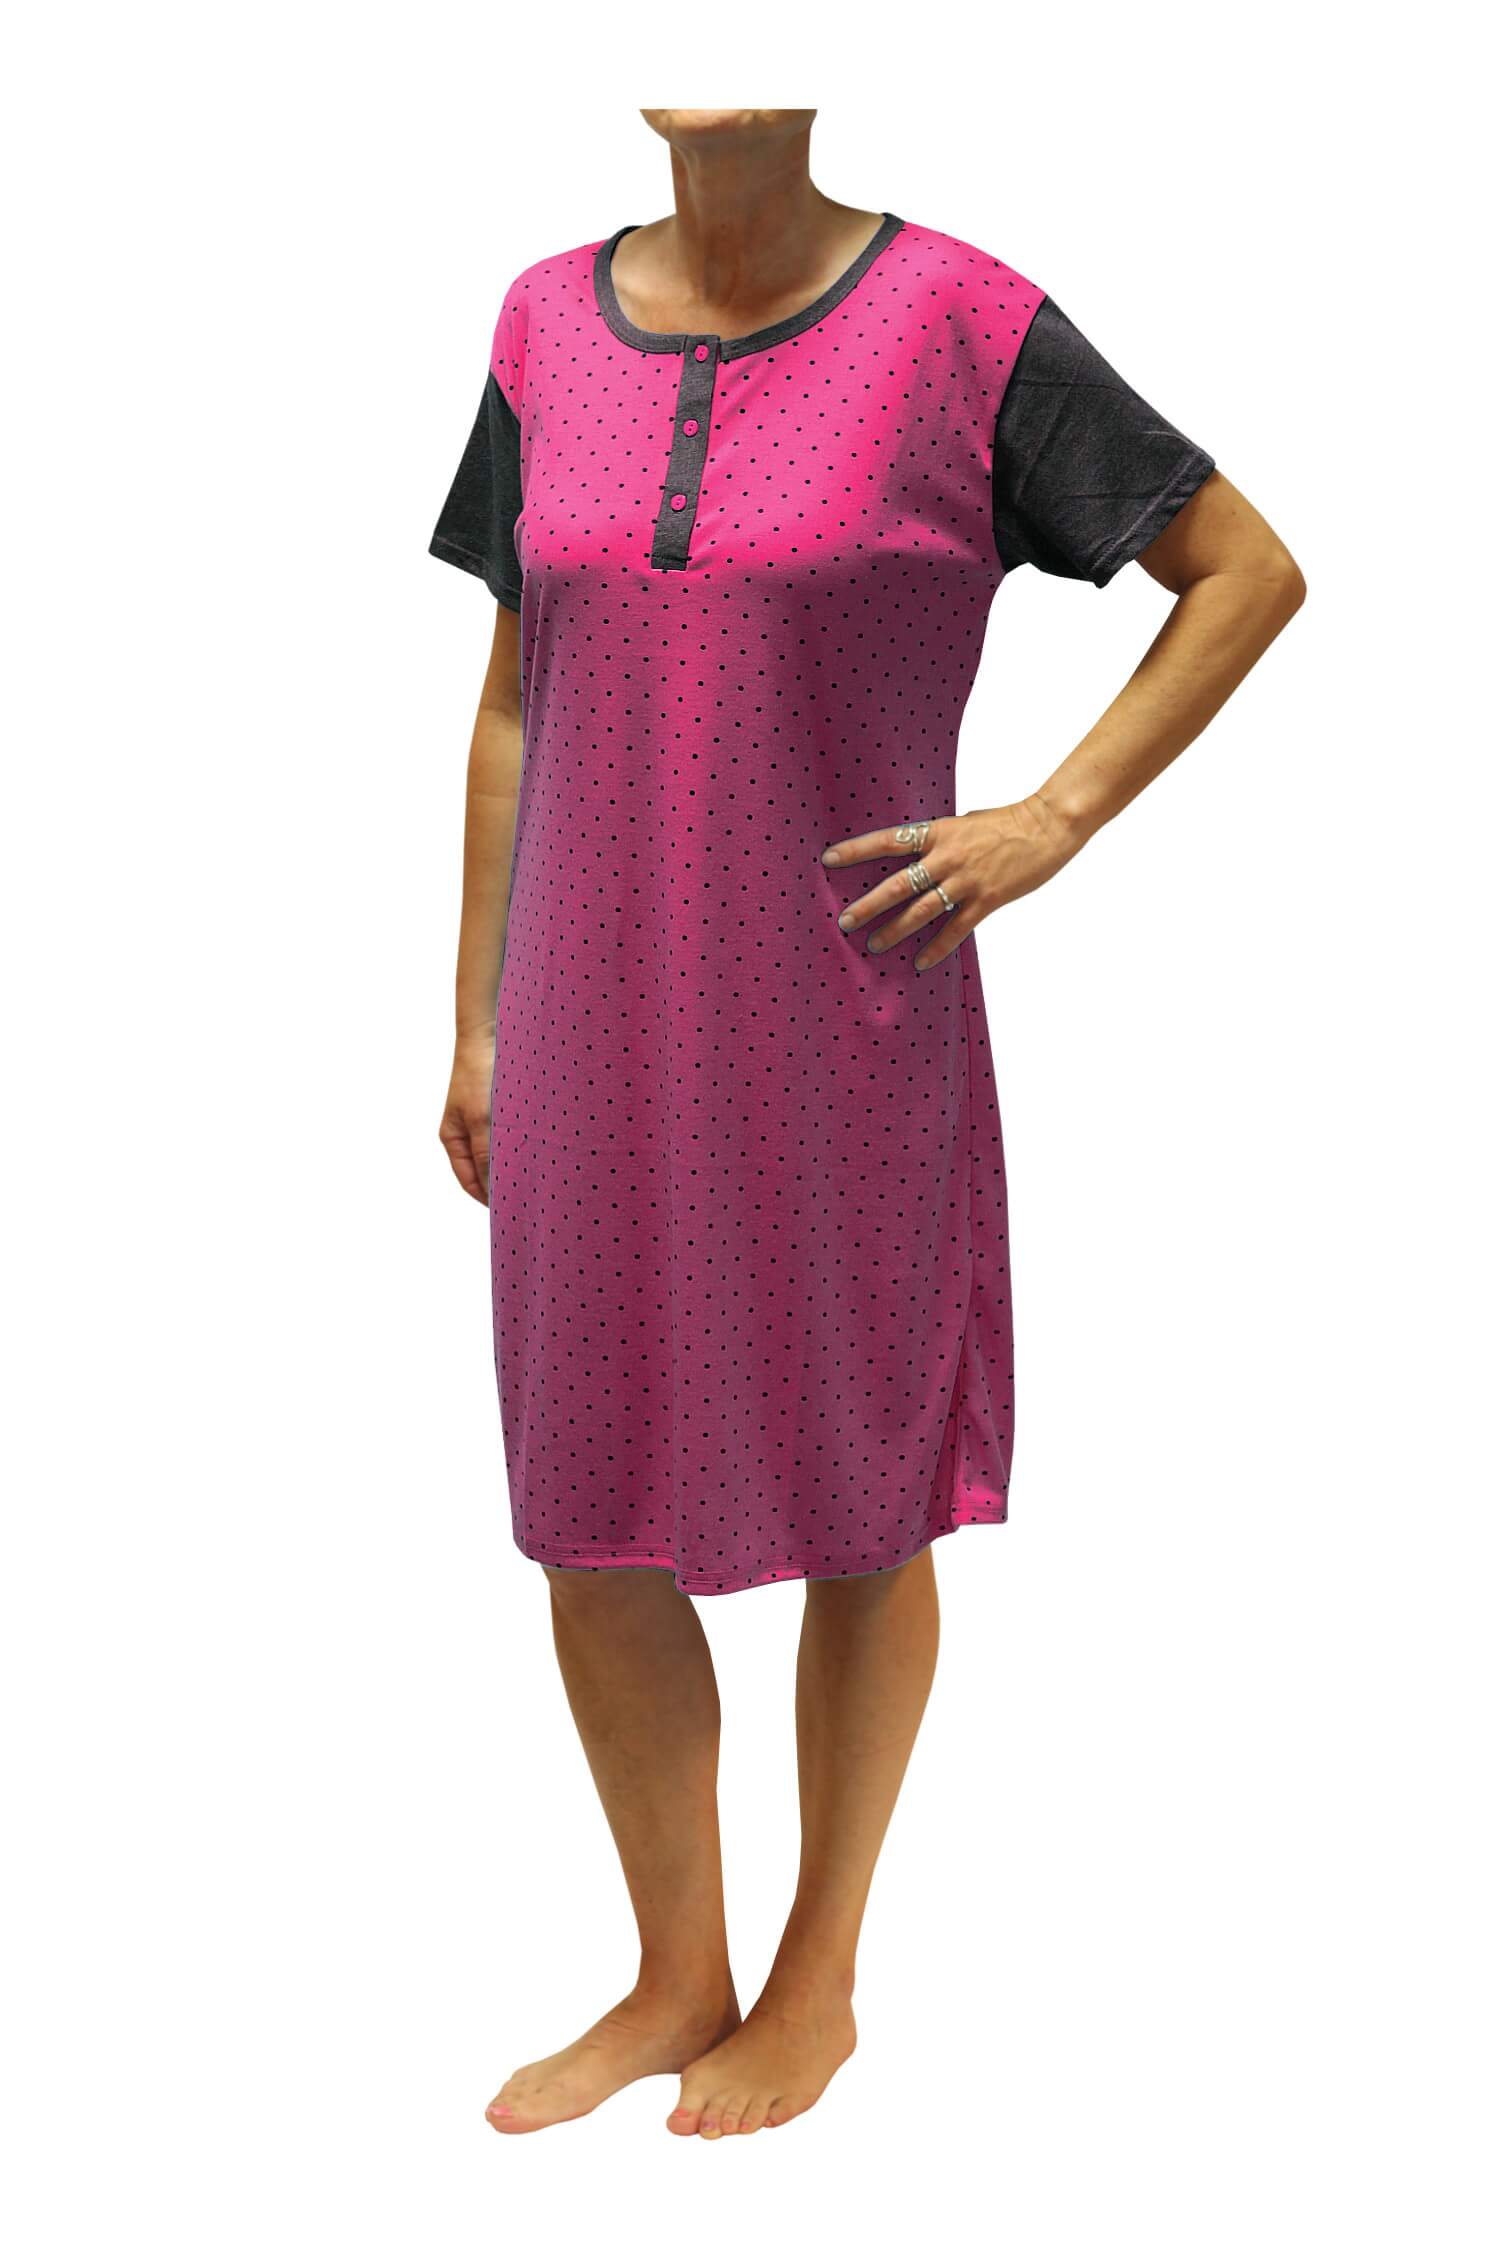 Adéla dámská noční košile s puntíky DNU329-NT L růžová